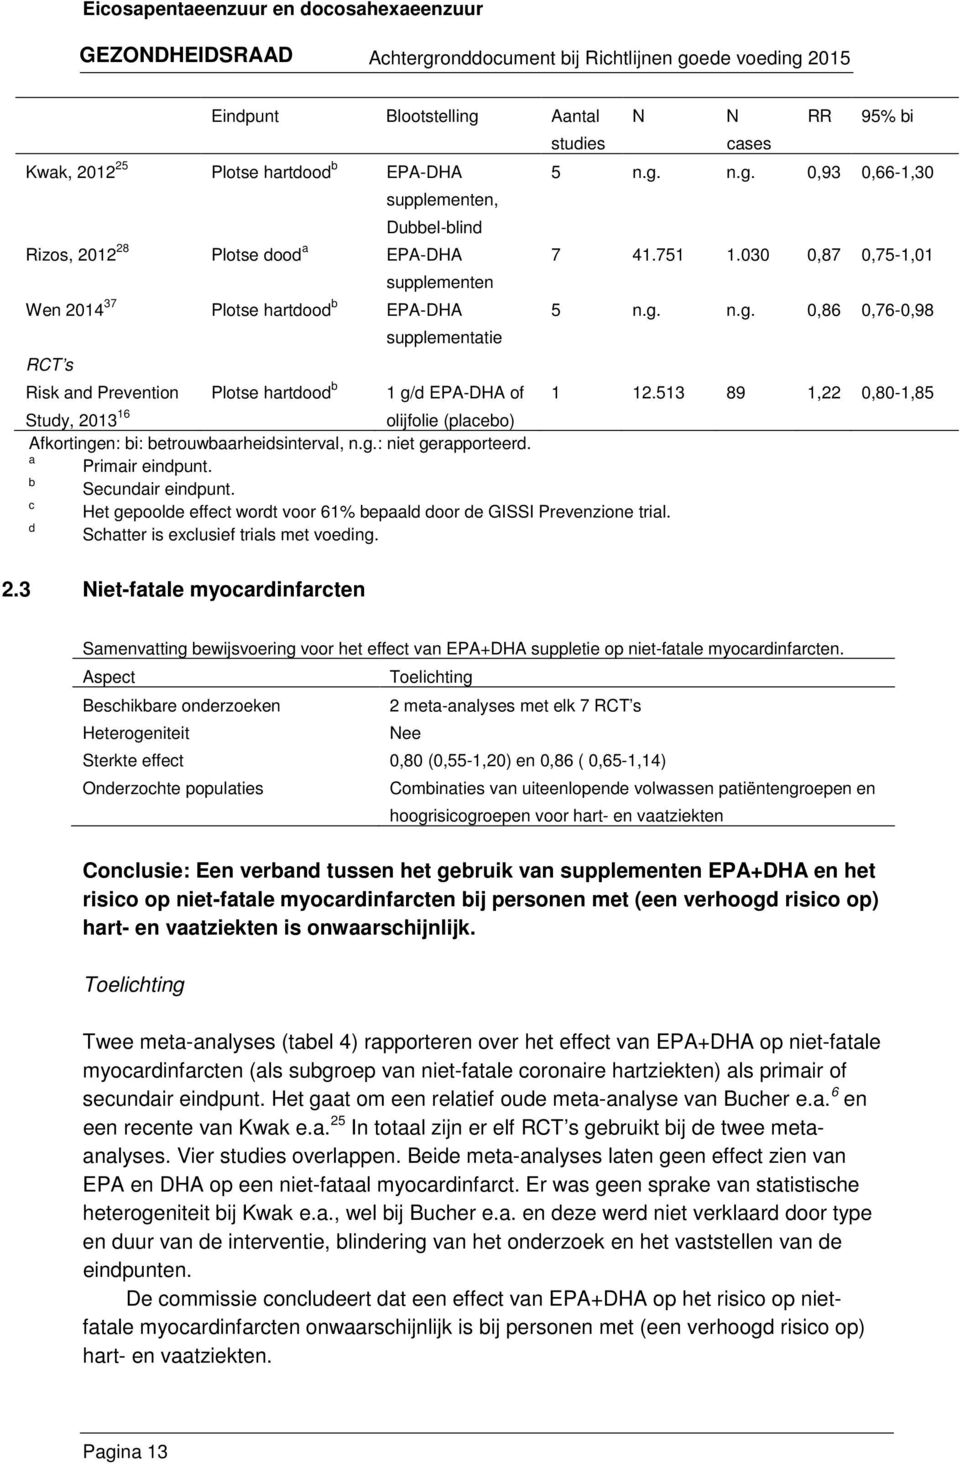 b Secundair eindpunt. c Het gepoolde effect wordt voor 61% bepaald door de GISSI Prevenzione trial. d Schatter is exclusief trials met voeding. N N cases RR 95% bi 5 n.g. n.g. 0,93 0,66-1,30 7 41.